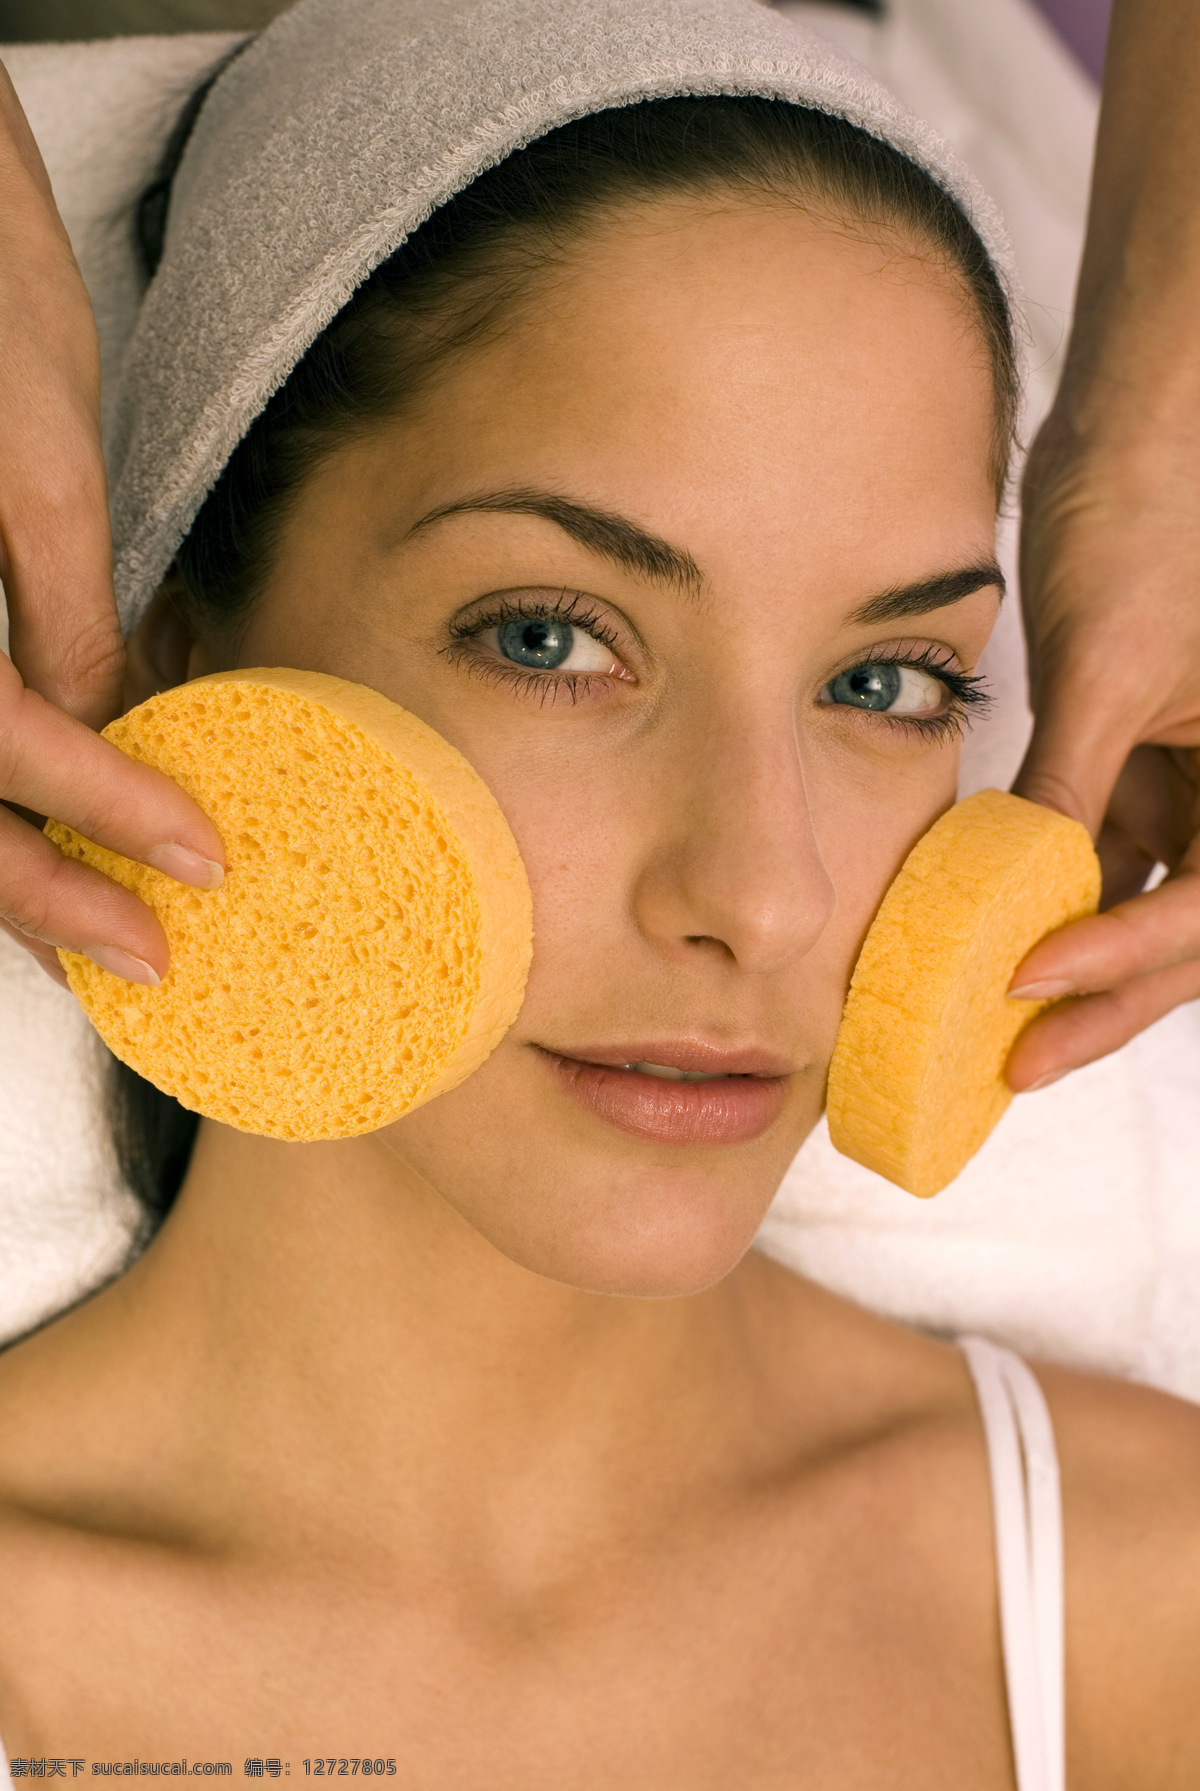 面部 清洁 女人 洗脸 水疗 美容 养生 护肤 spa 女性 脸部清洁 海绵 美女图片 人物图片